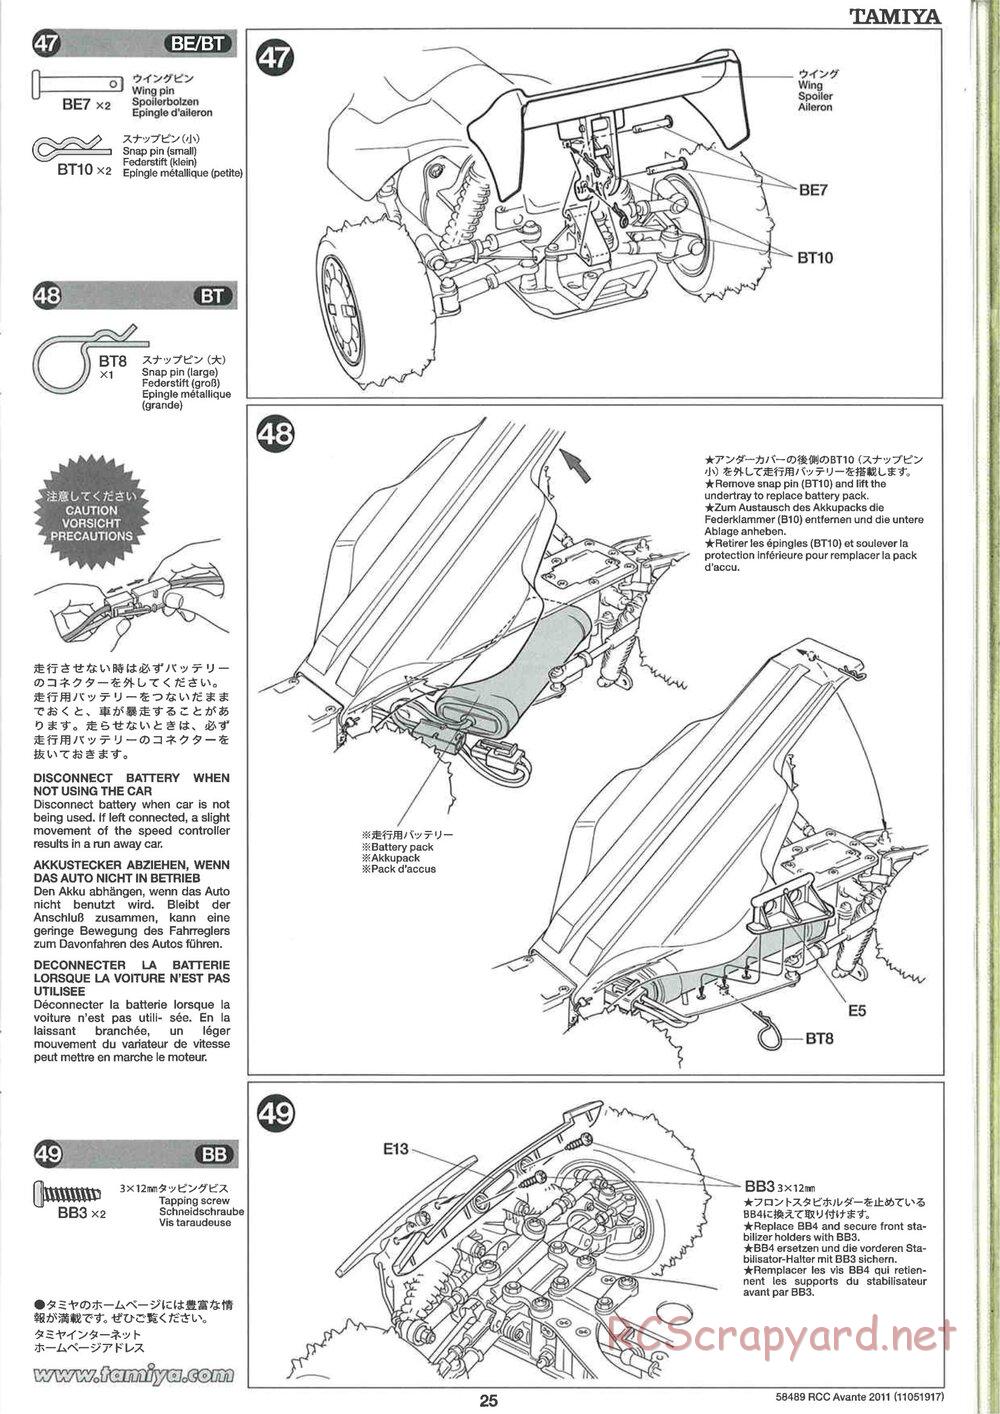 Tamiya - Avante 2011 - AV Chassis - Manual - Page 25